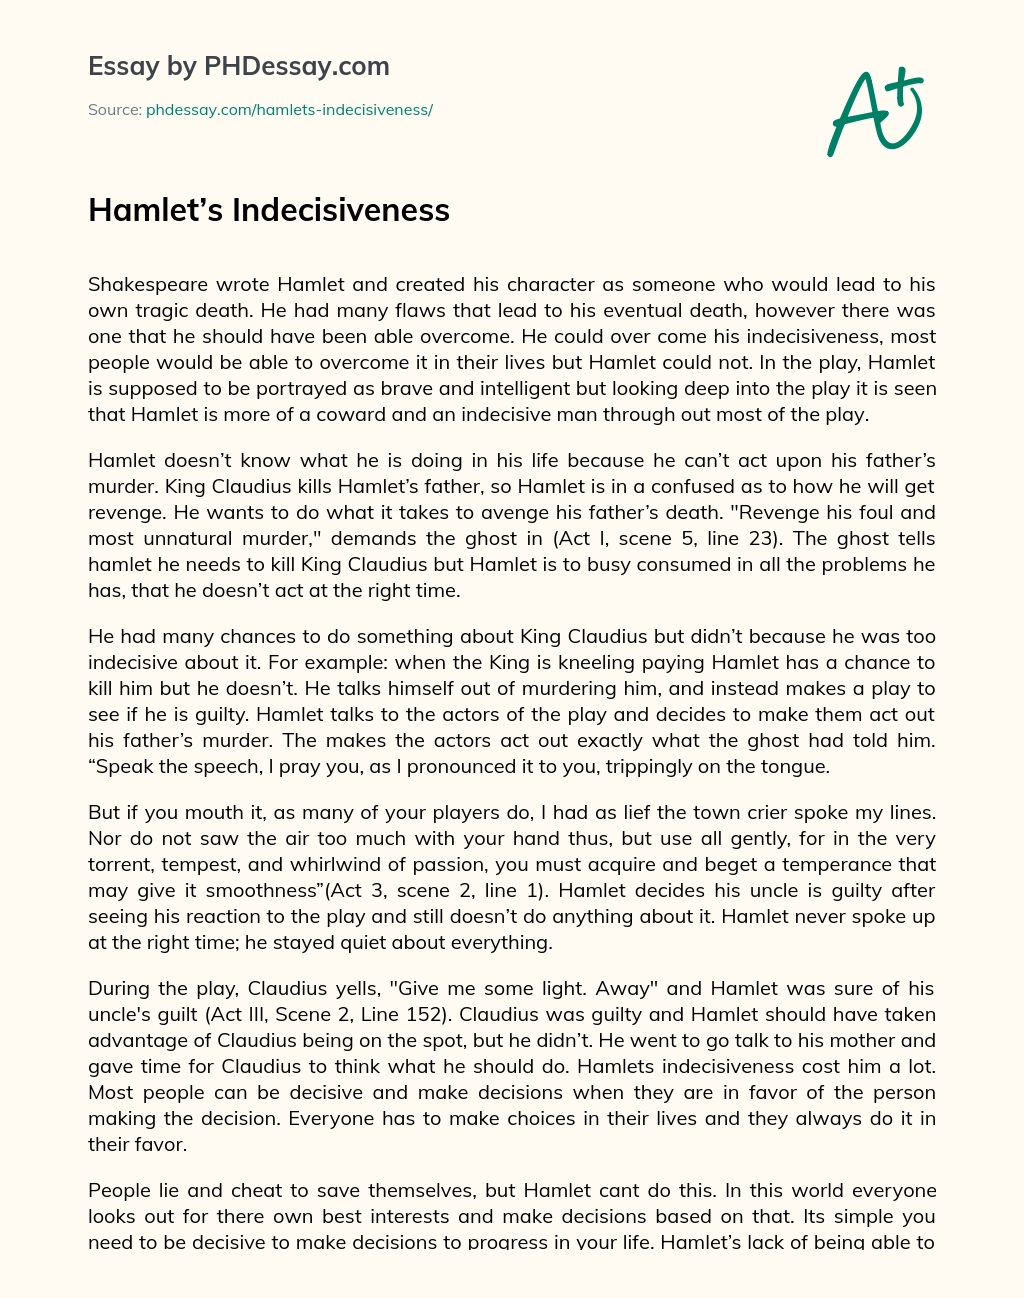 Hamlet’s Indecisiveness essay